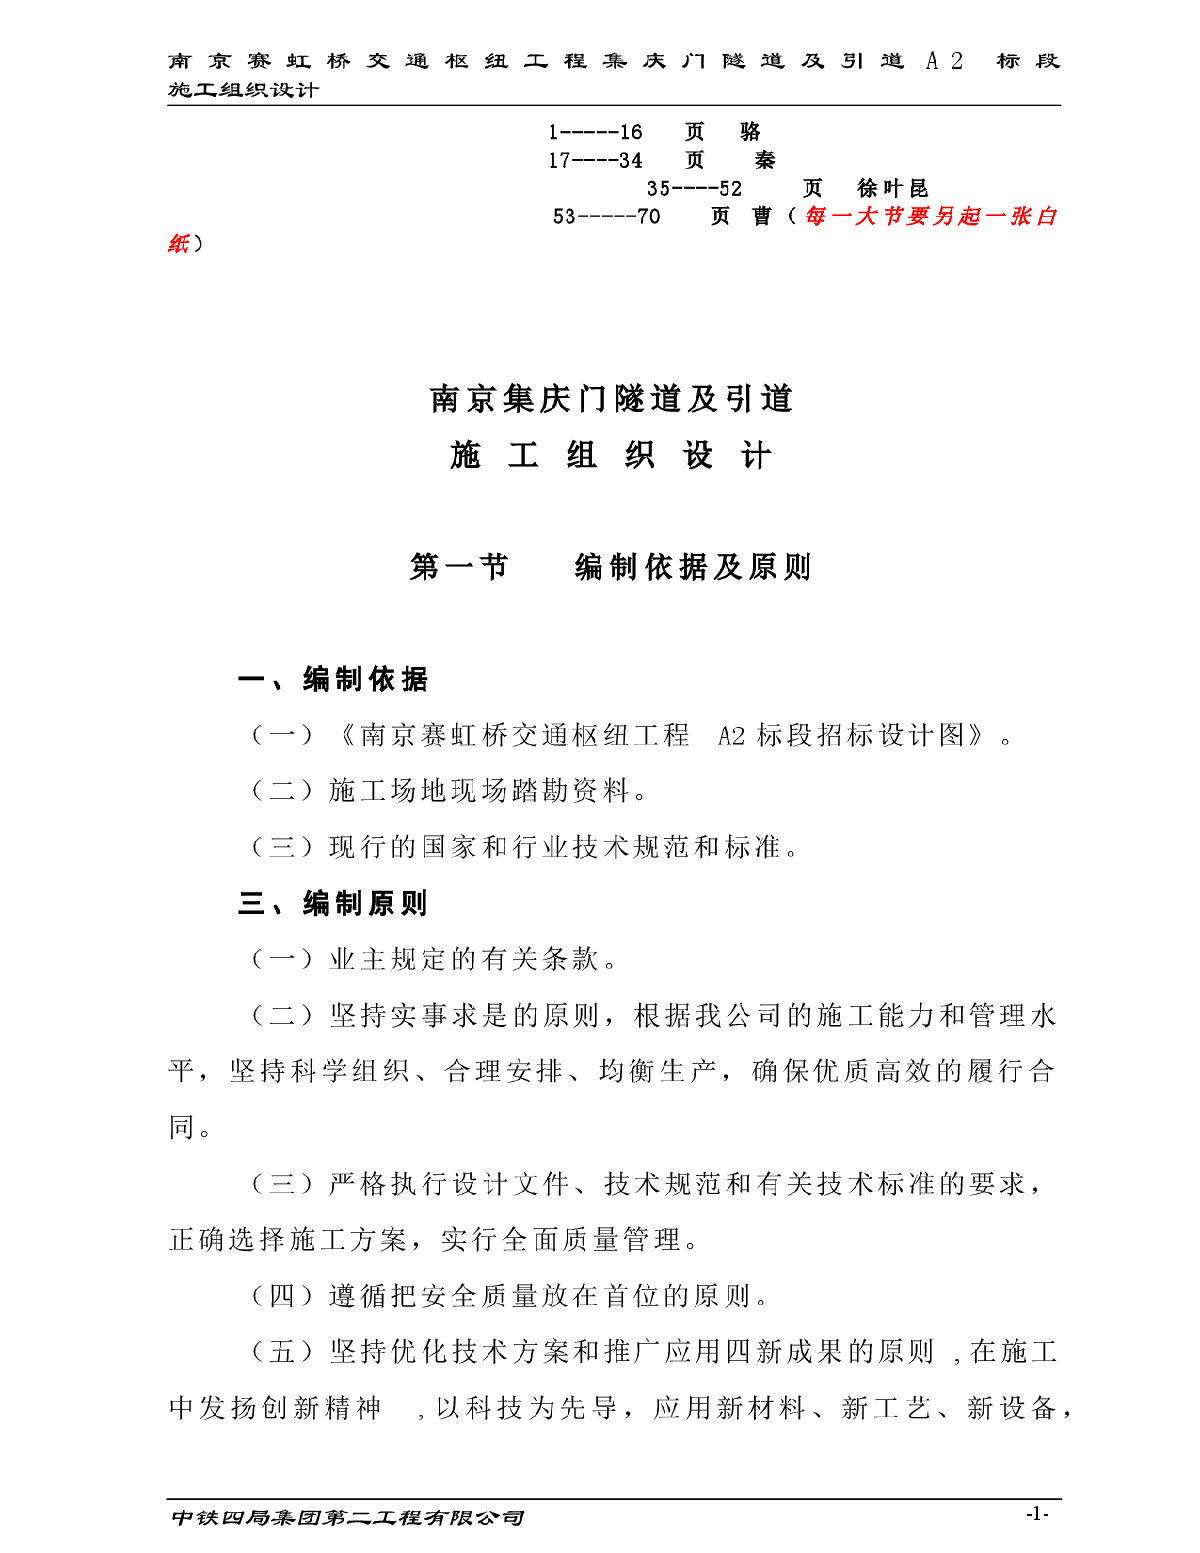 【南京】集庆门隧道及引道